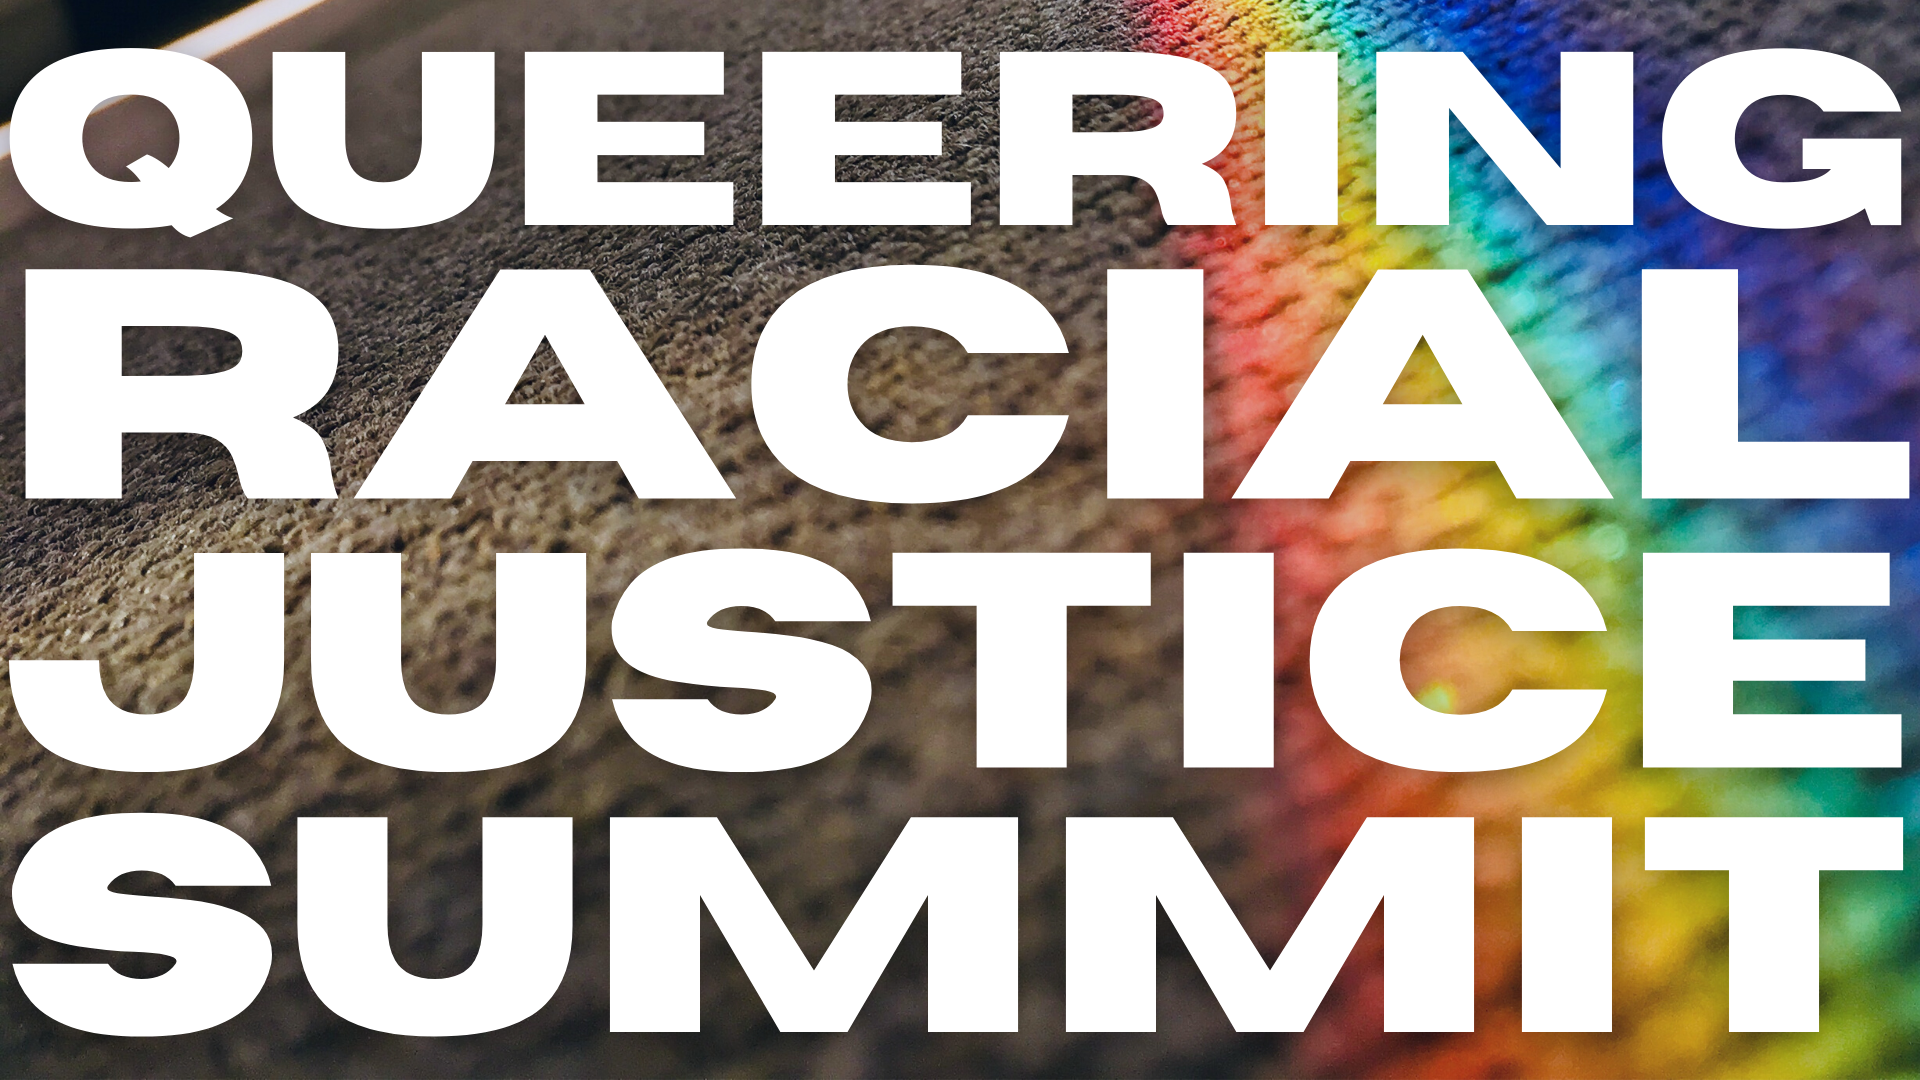 Queering Racial Justice Summit